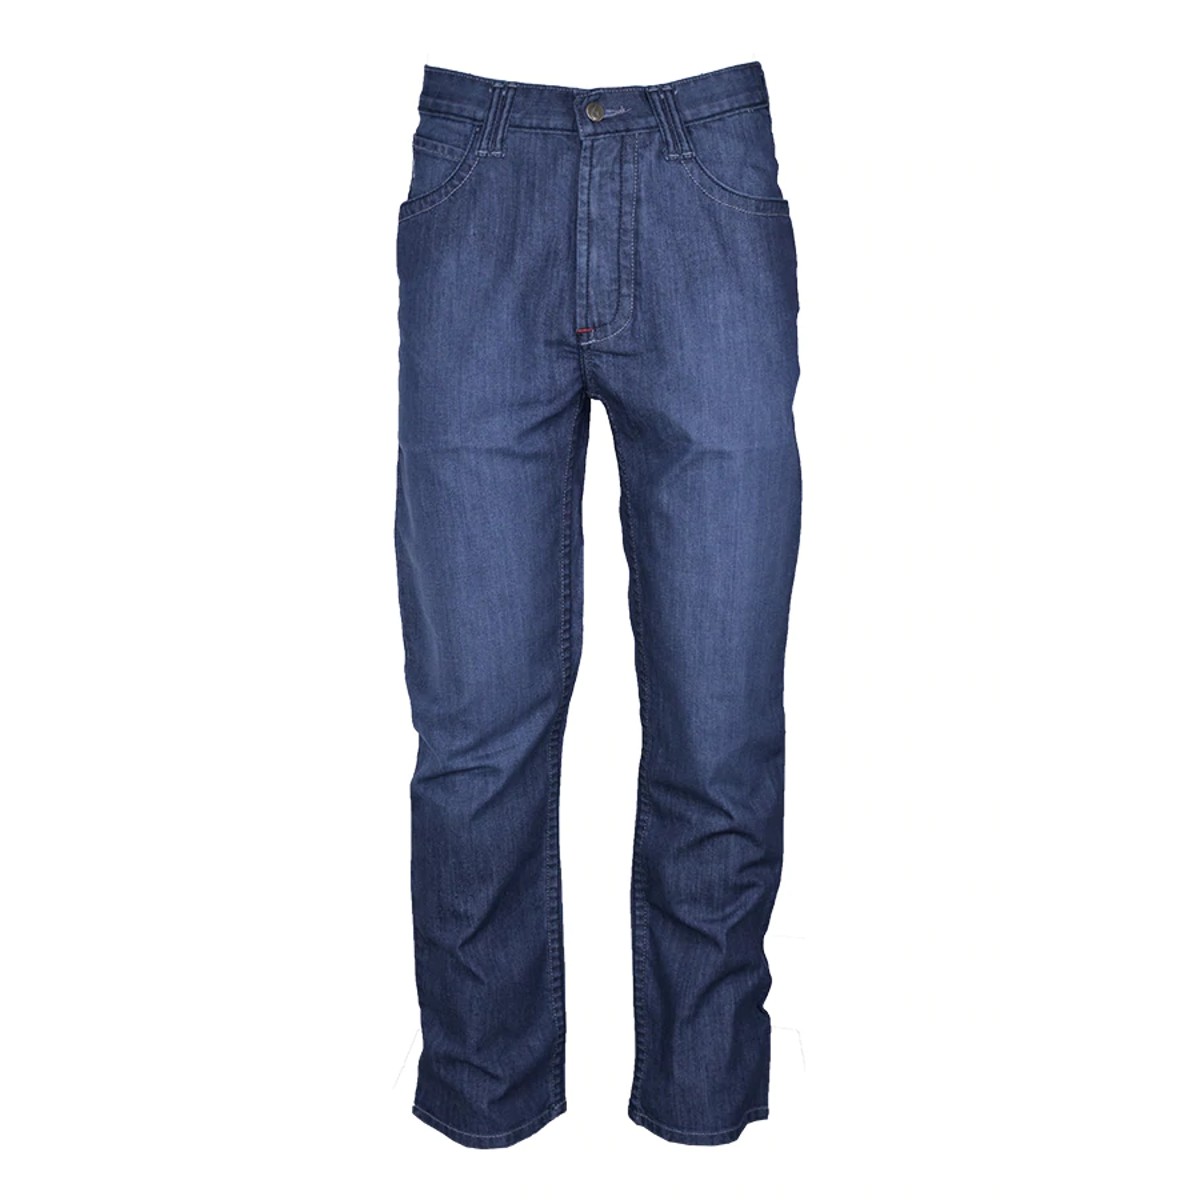 LAPCO FR Comfort Flex Jeans in Denim